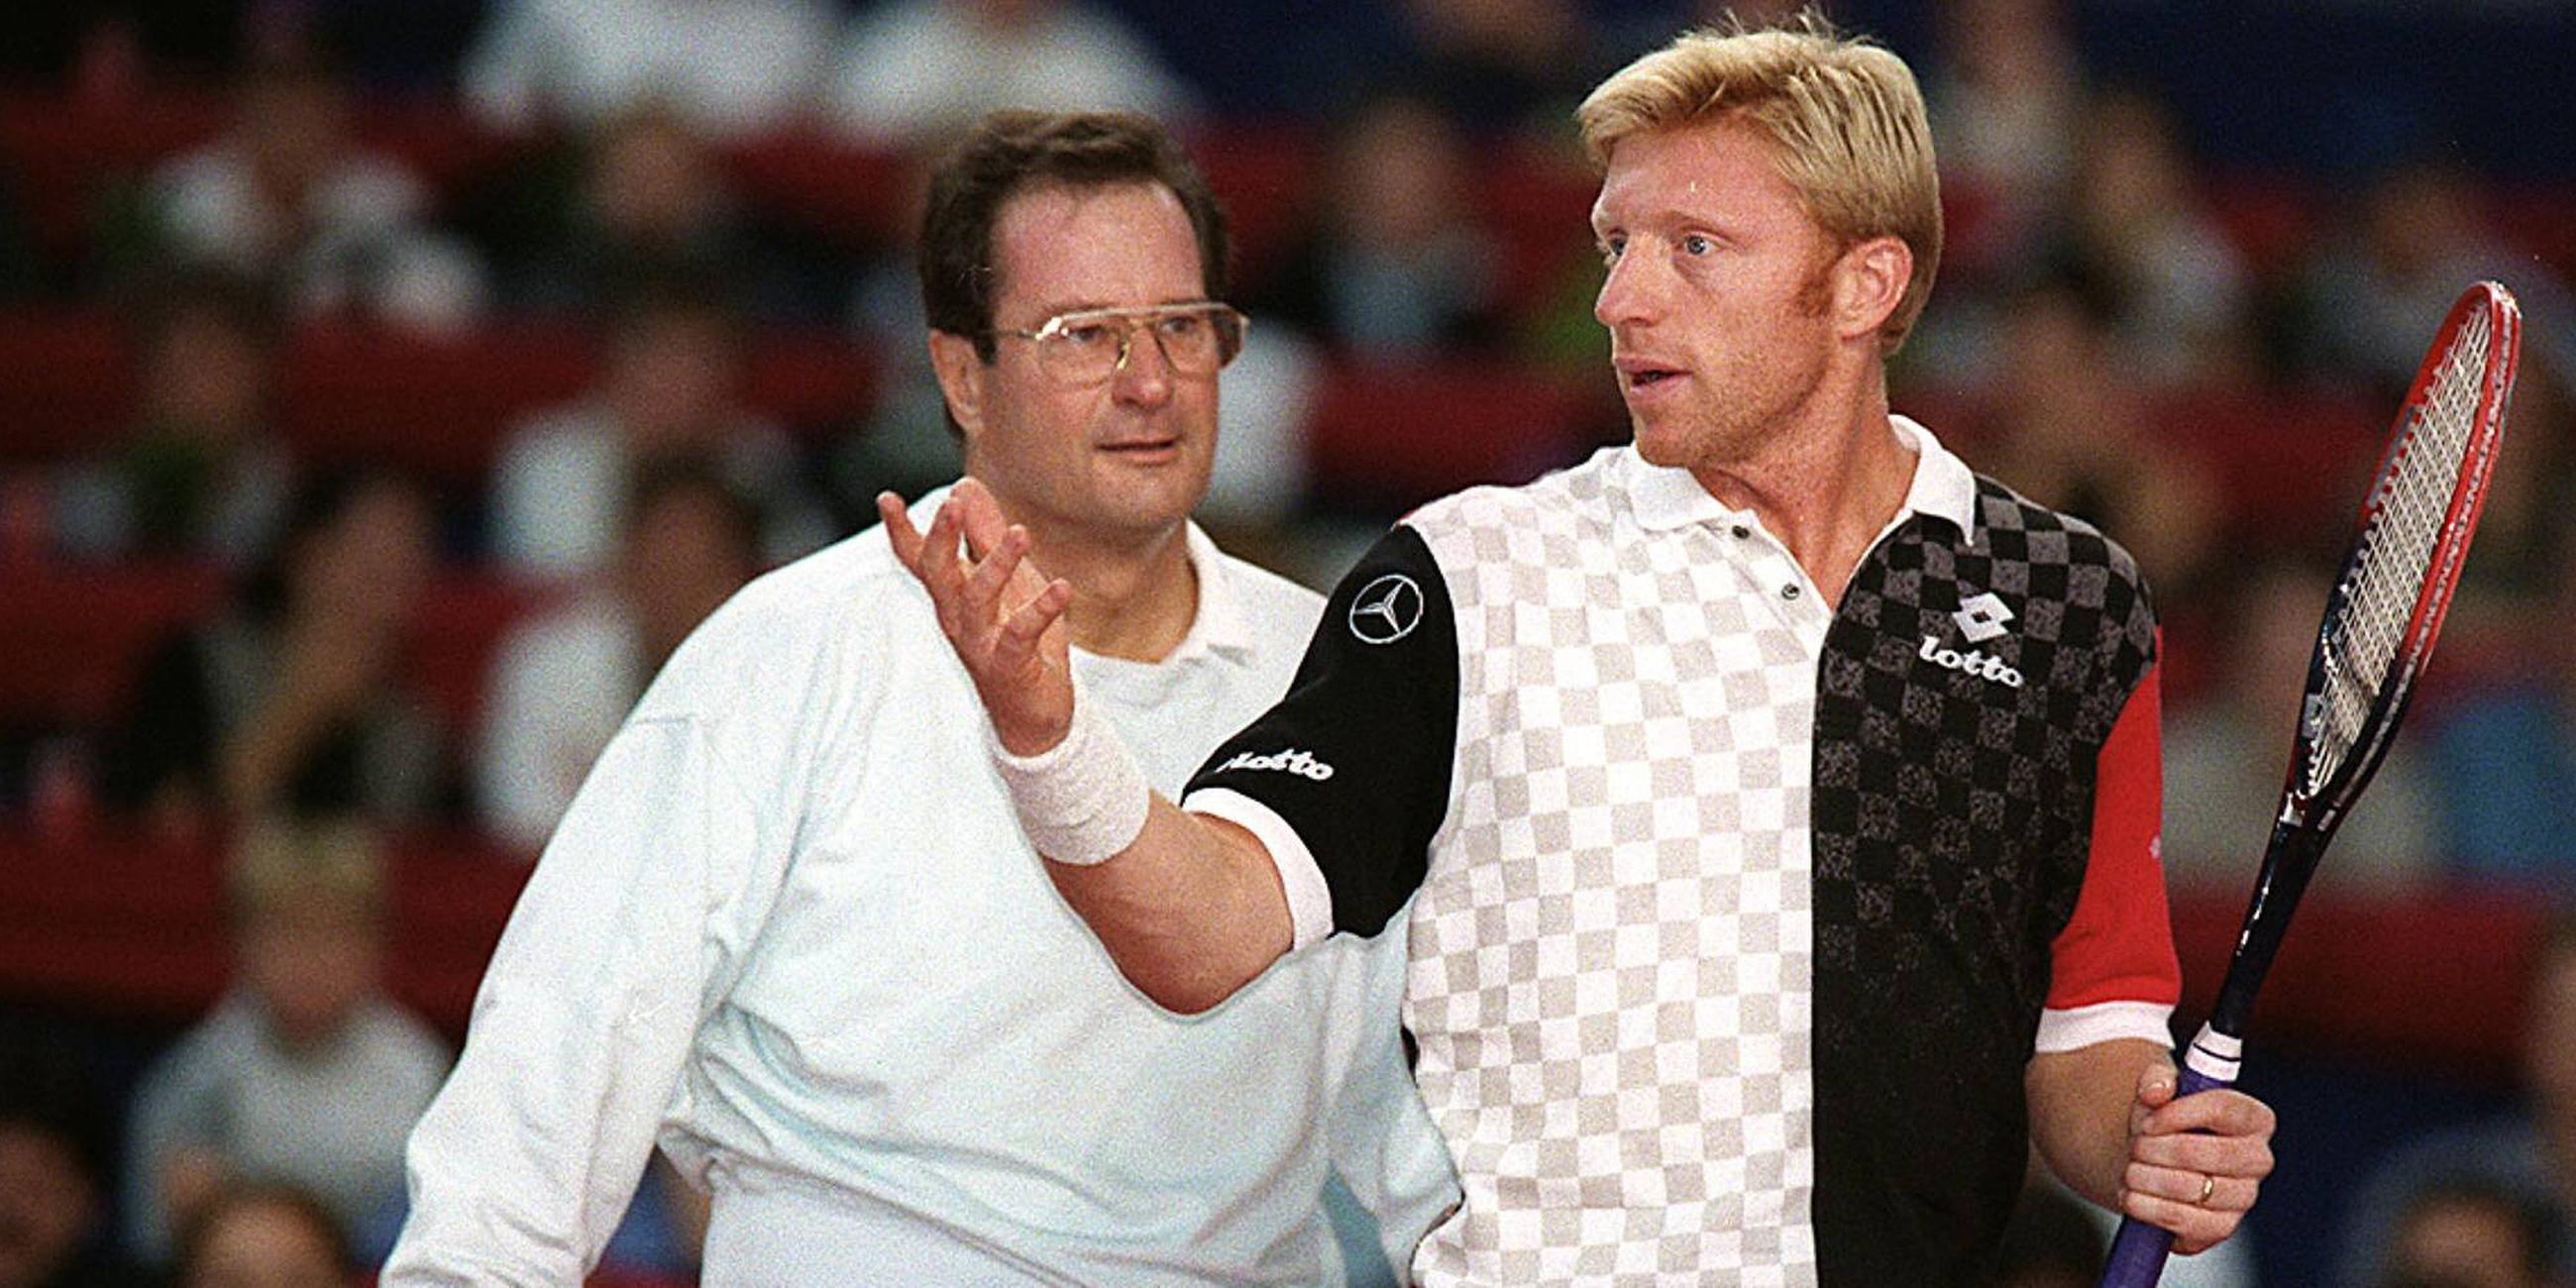 Stuttgart Eurocard Open 1997: Boris Becker und Klaus Kinkel